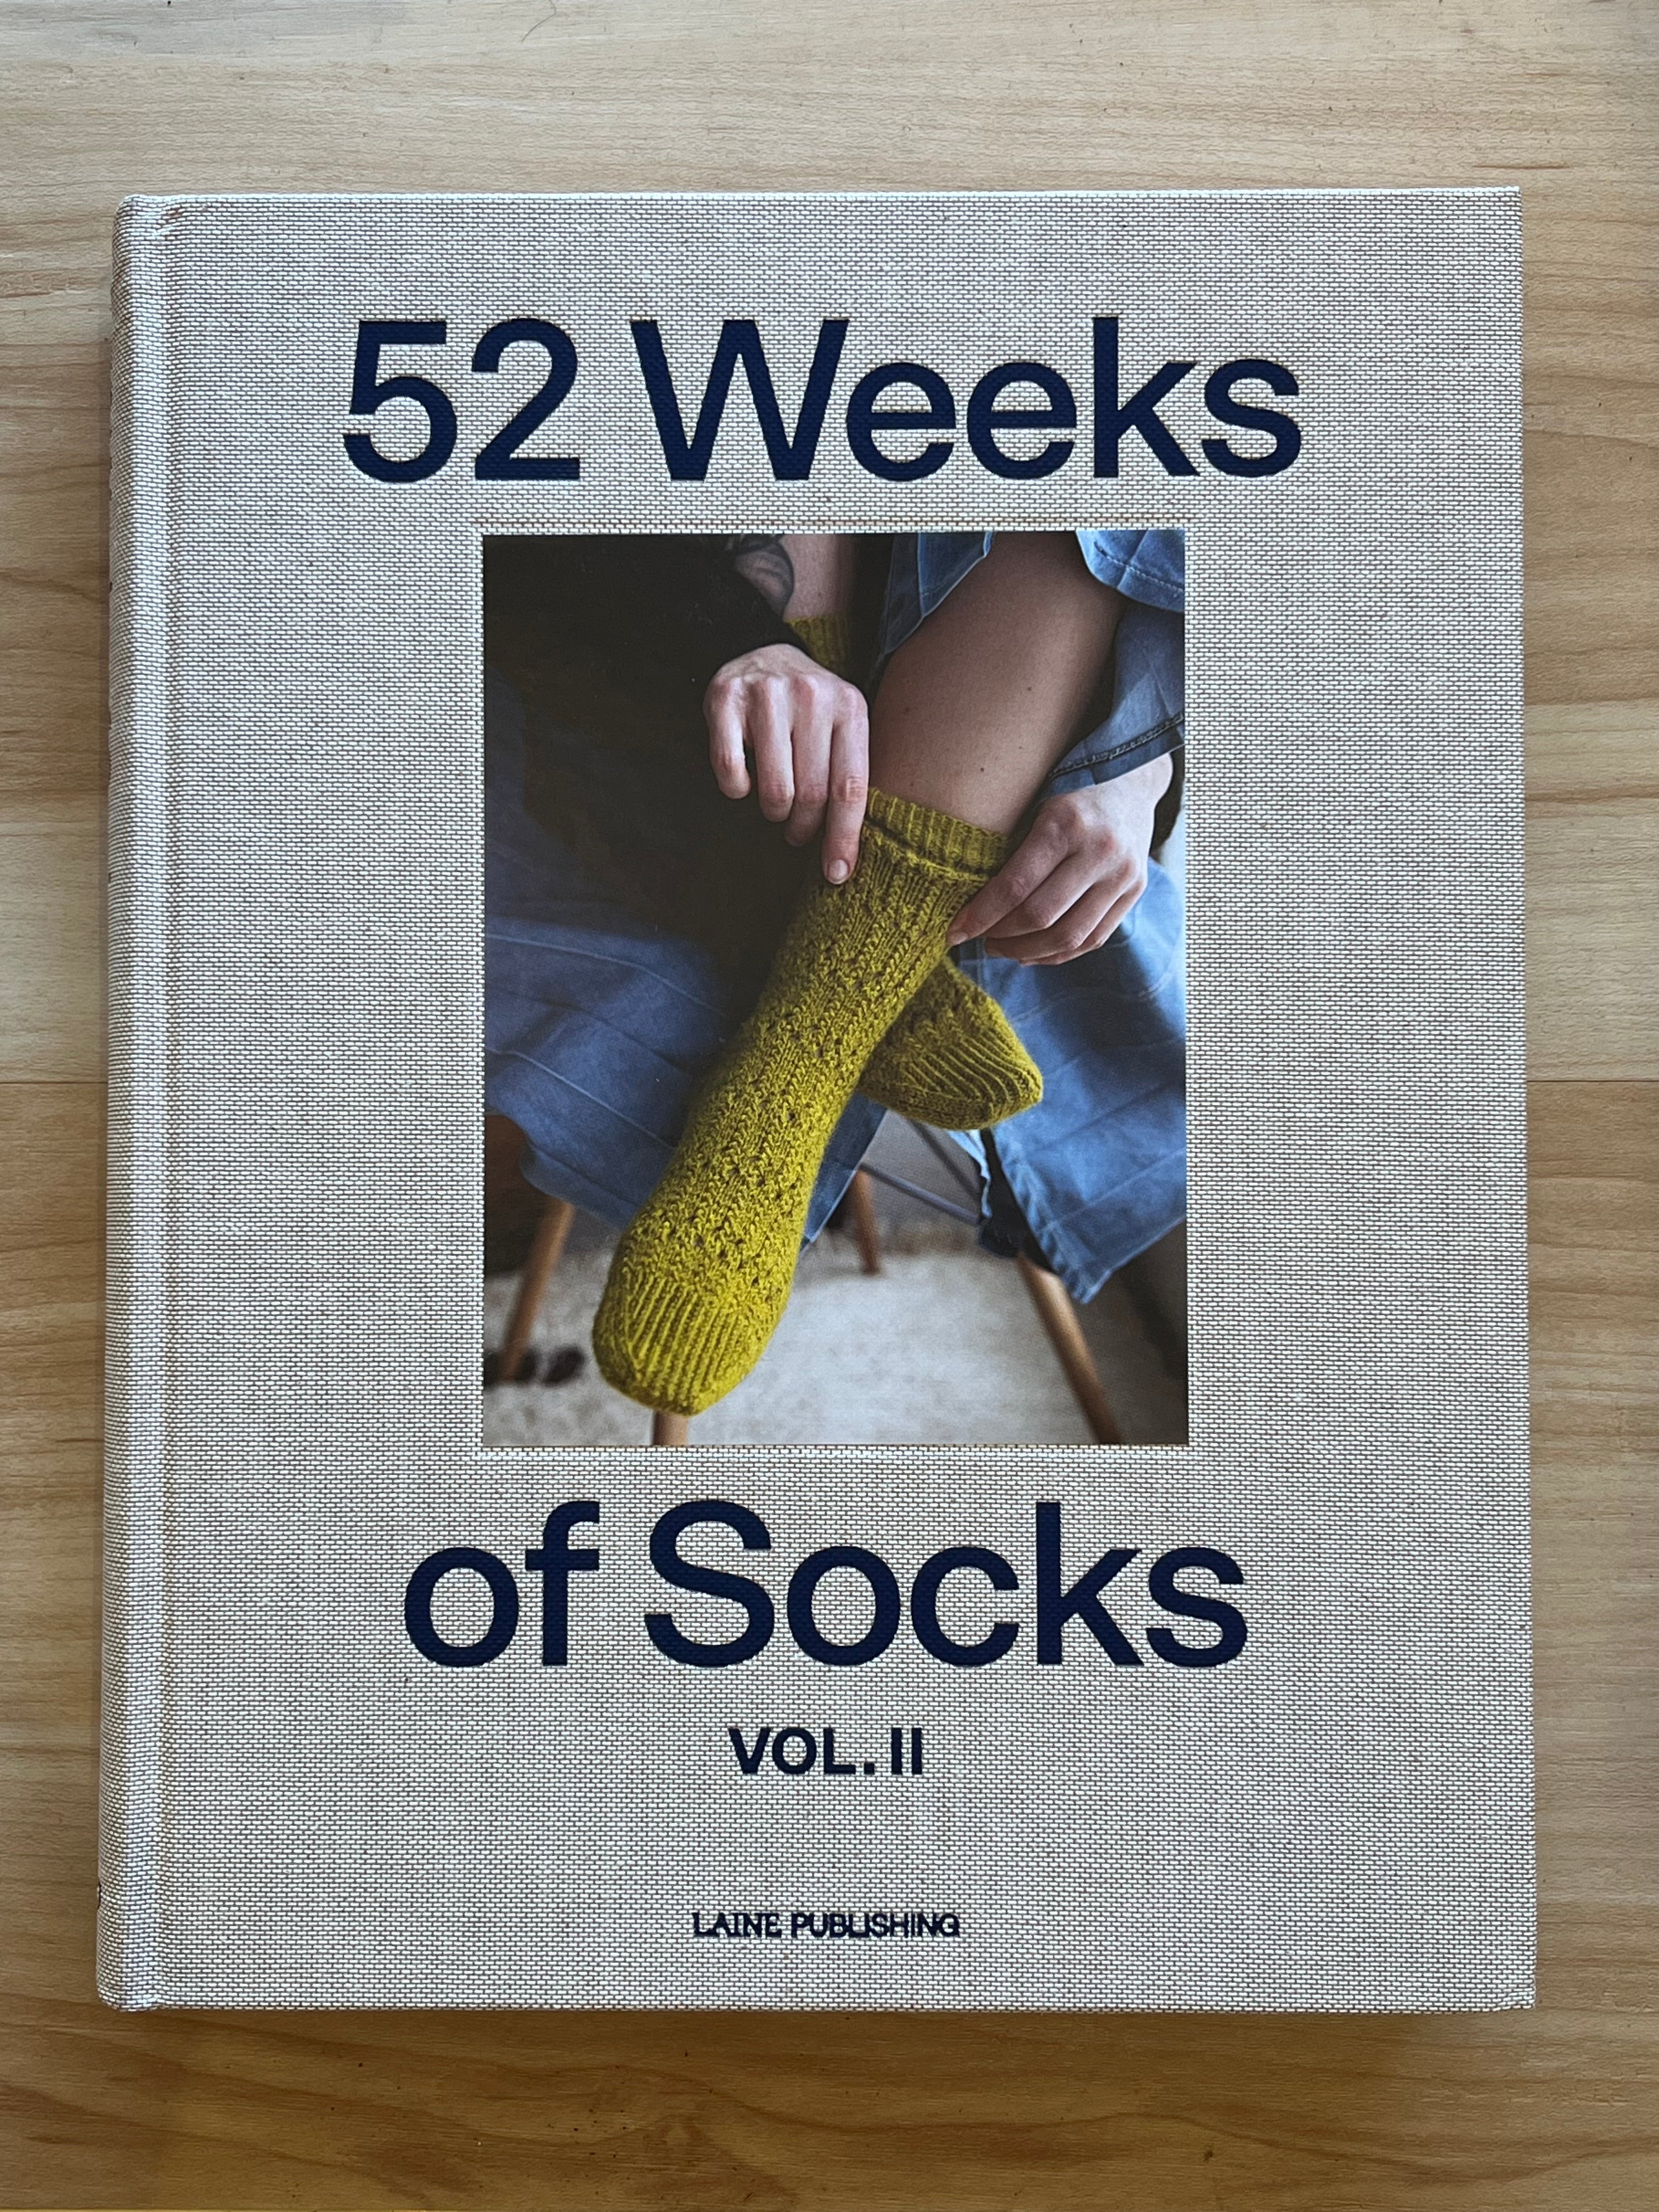 52 Weeks of Socks Vol. II